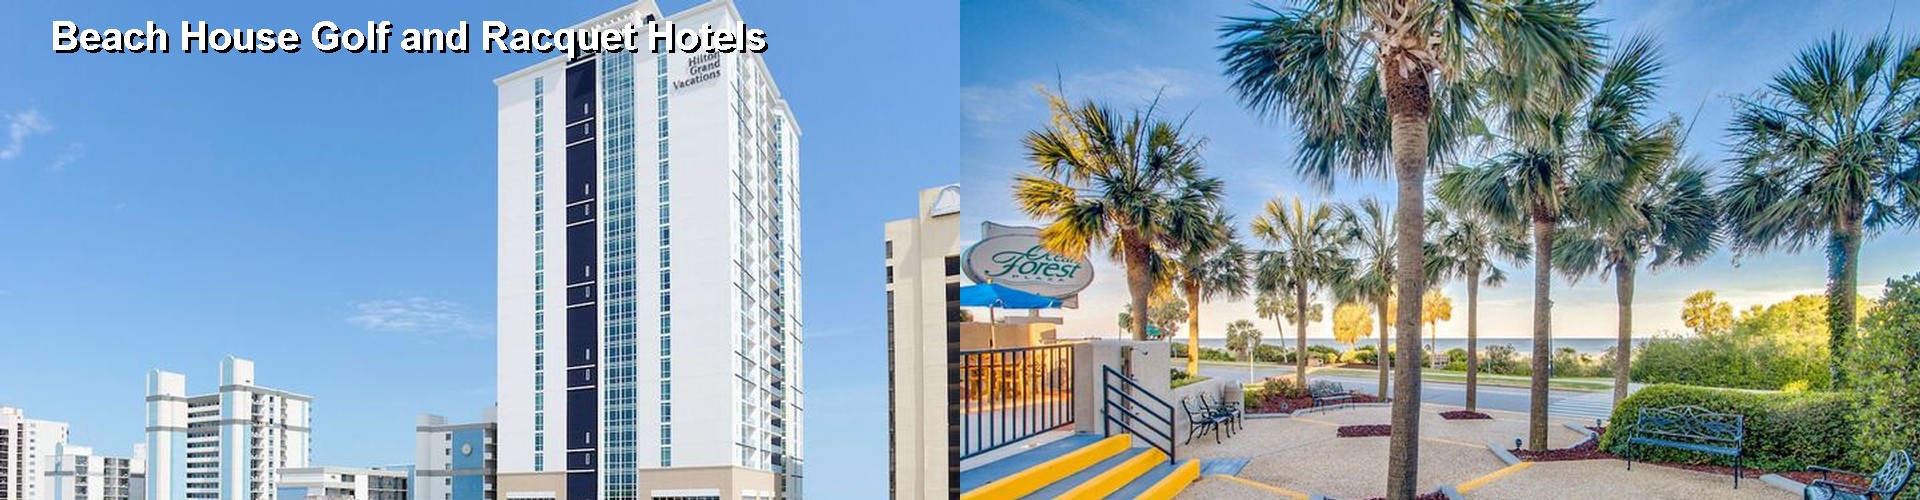 5 Best Hotels near Beach House Golf and Racquet